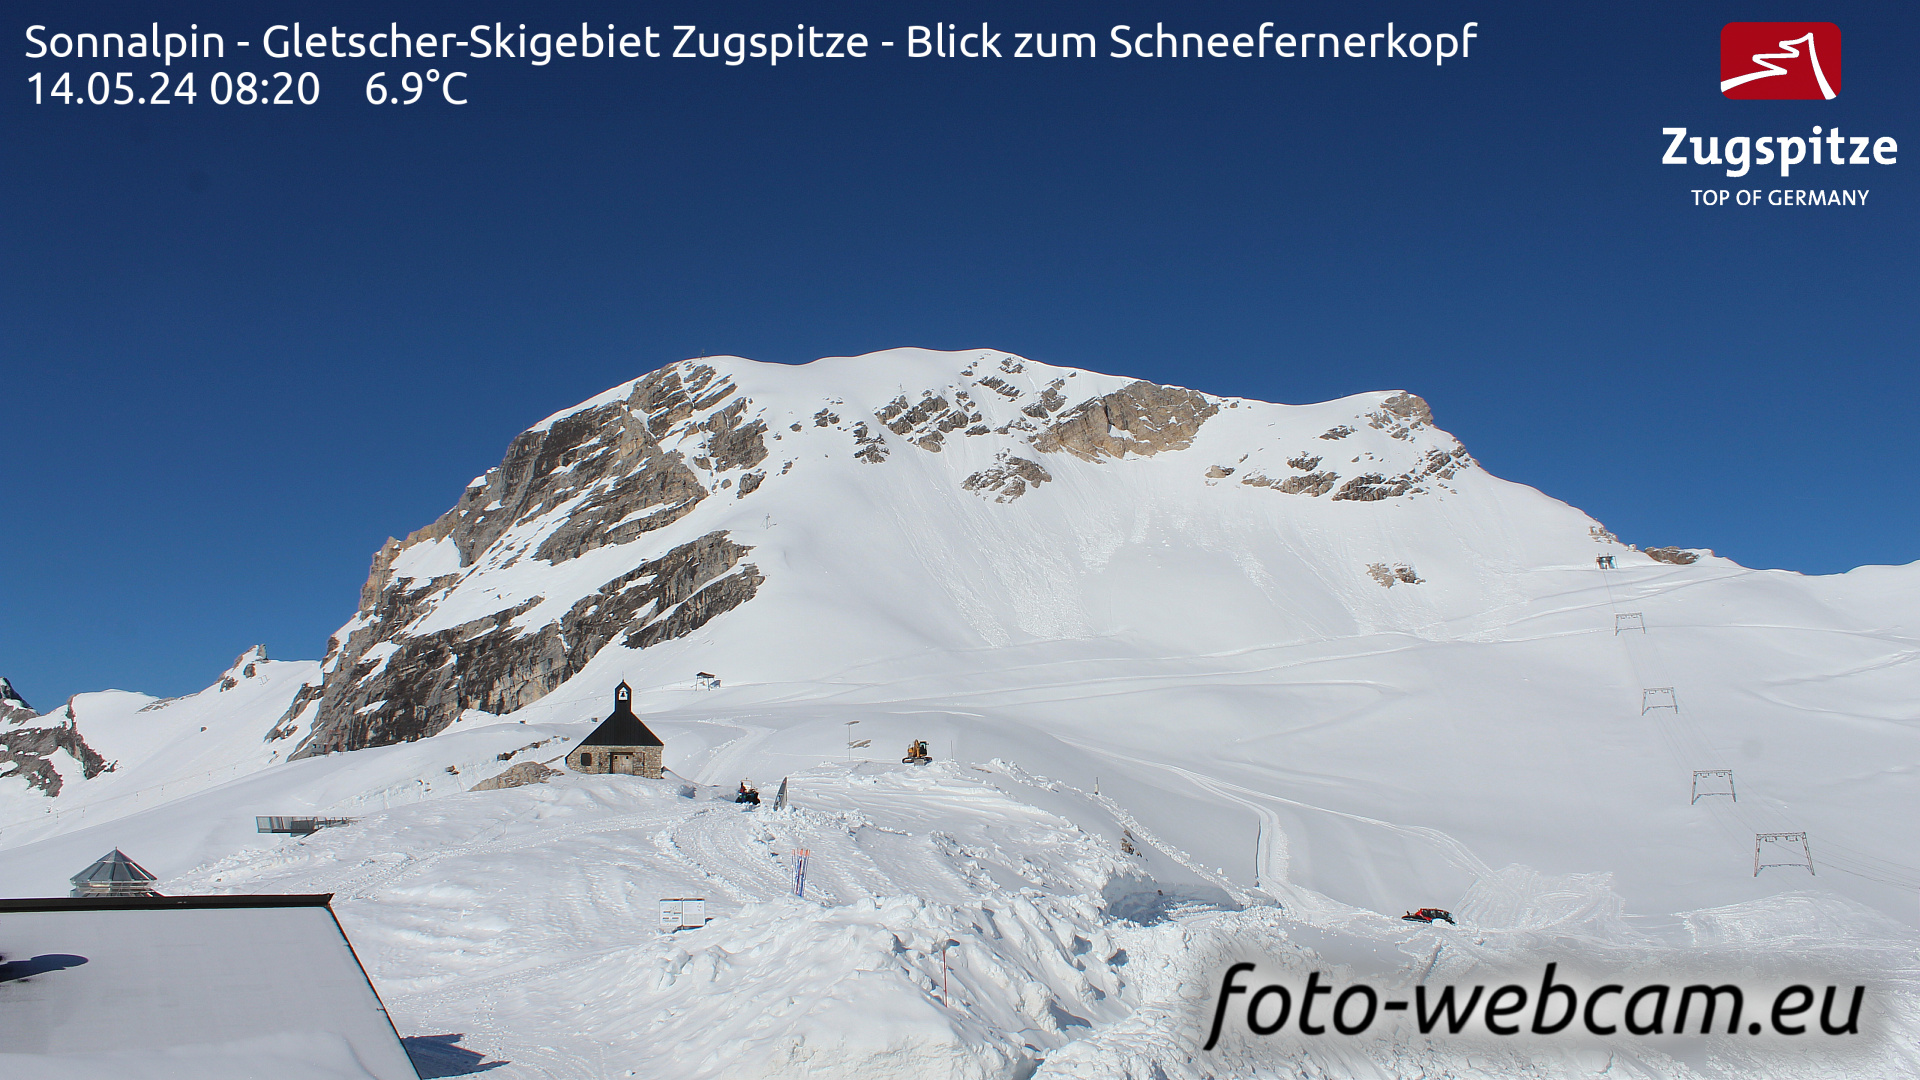 Zugspitze Wed. 08:24